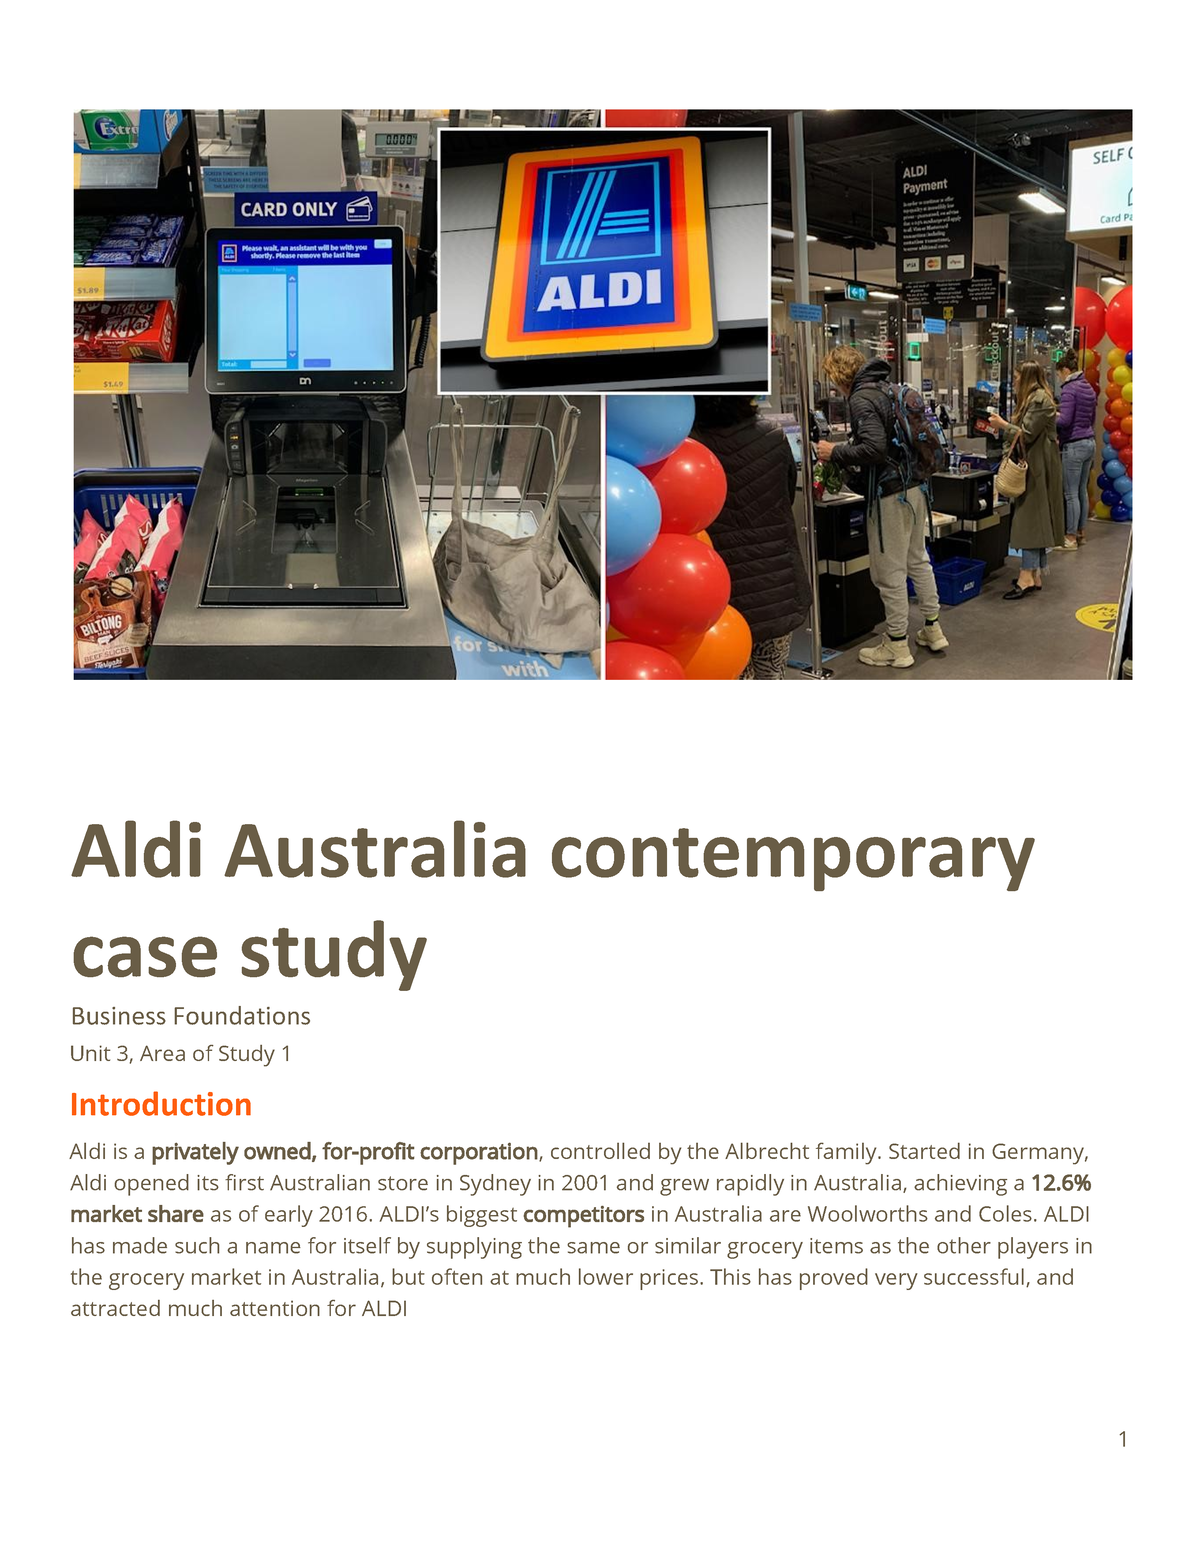 aldi case study slideshare